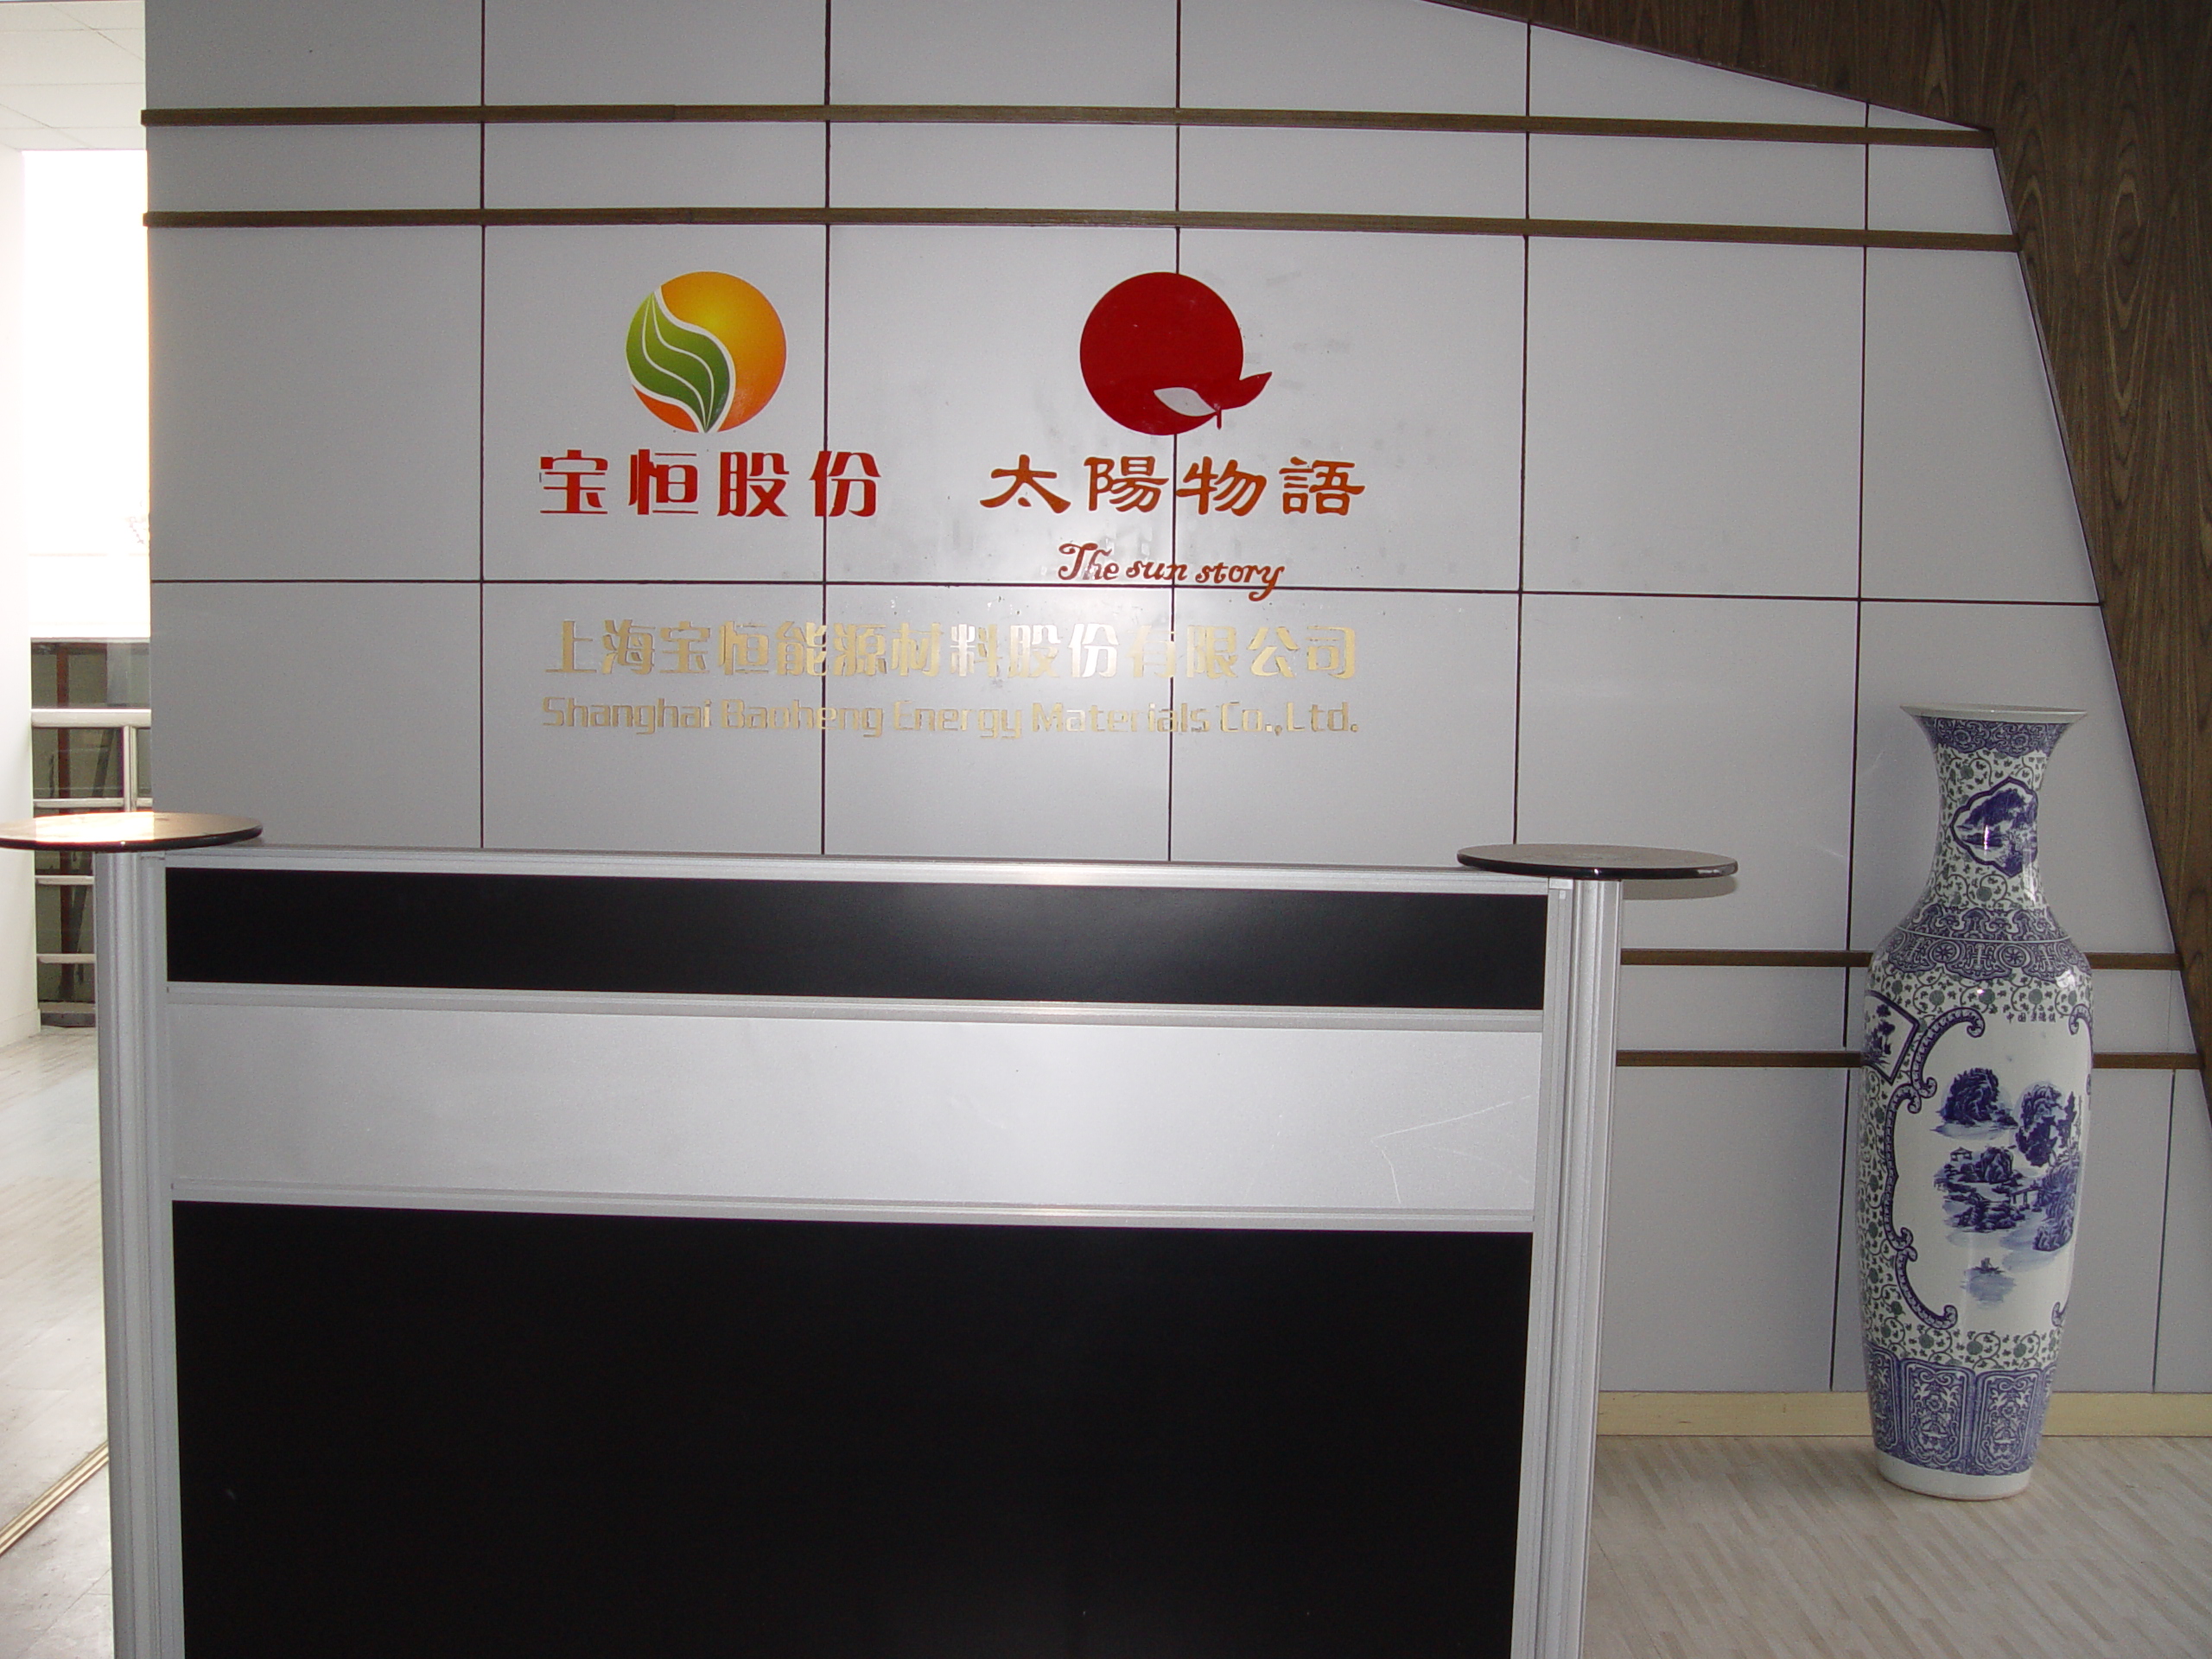 上海寶恆能源材料股份有限公司